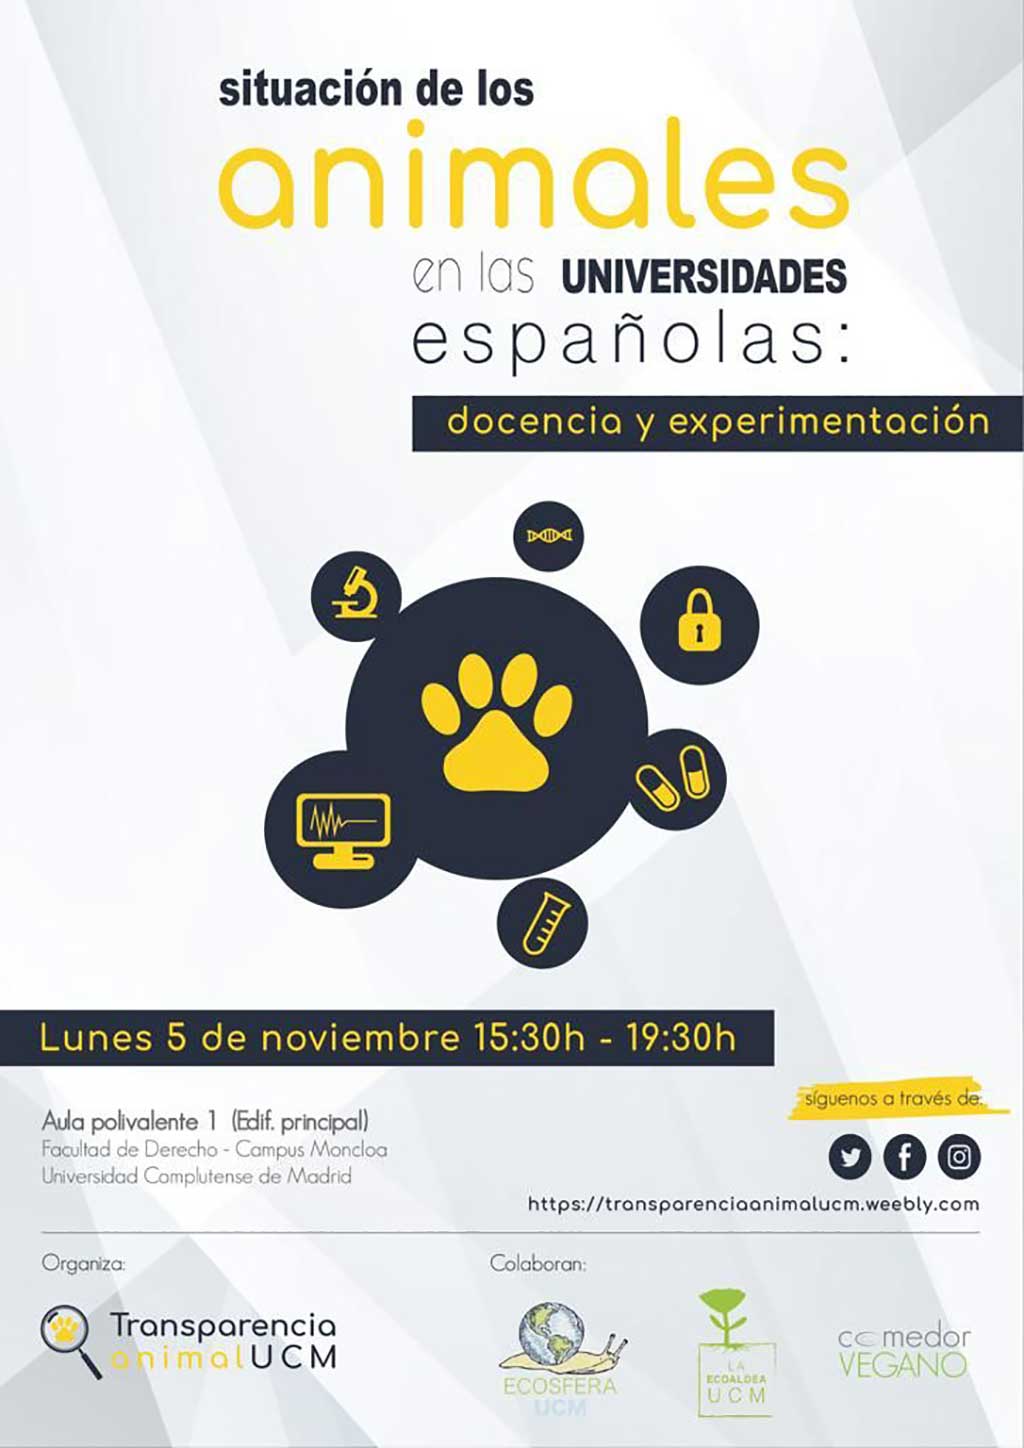 Situación de los animales en la universidades españolas (Transparencia Animal UCM).